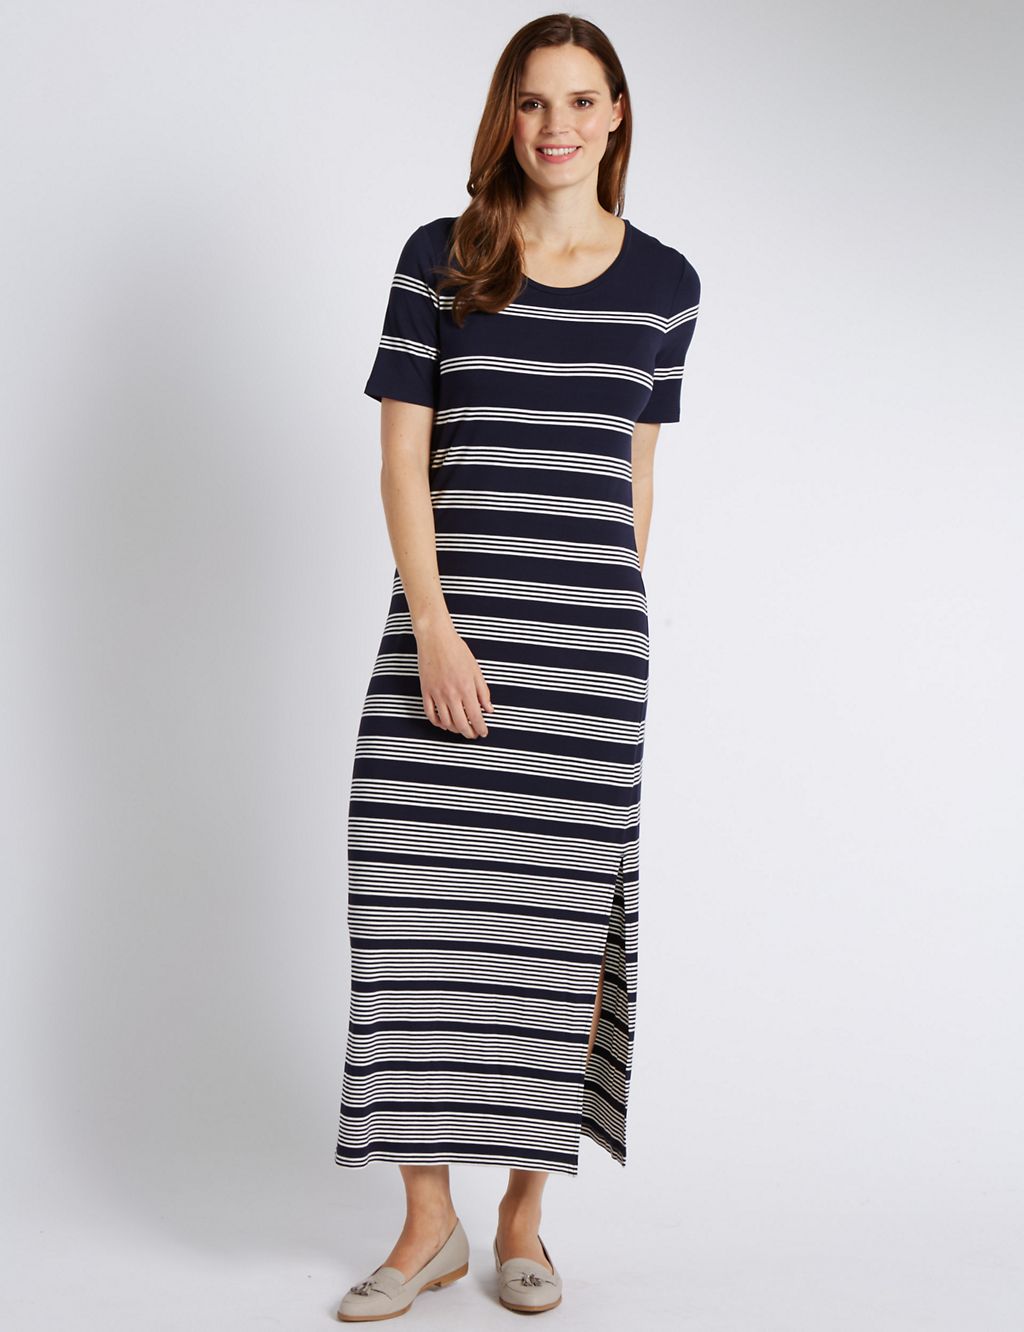 Striped Maxi Dress 3 of 3